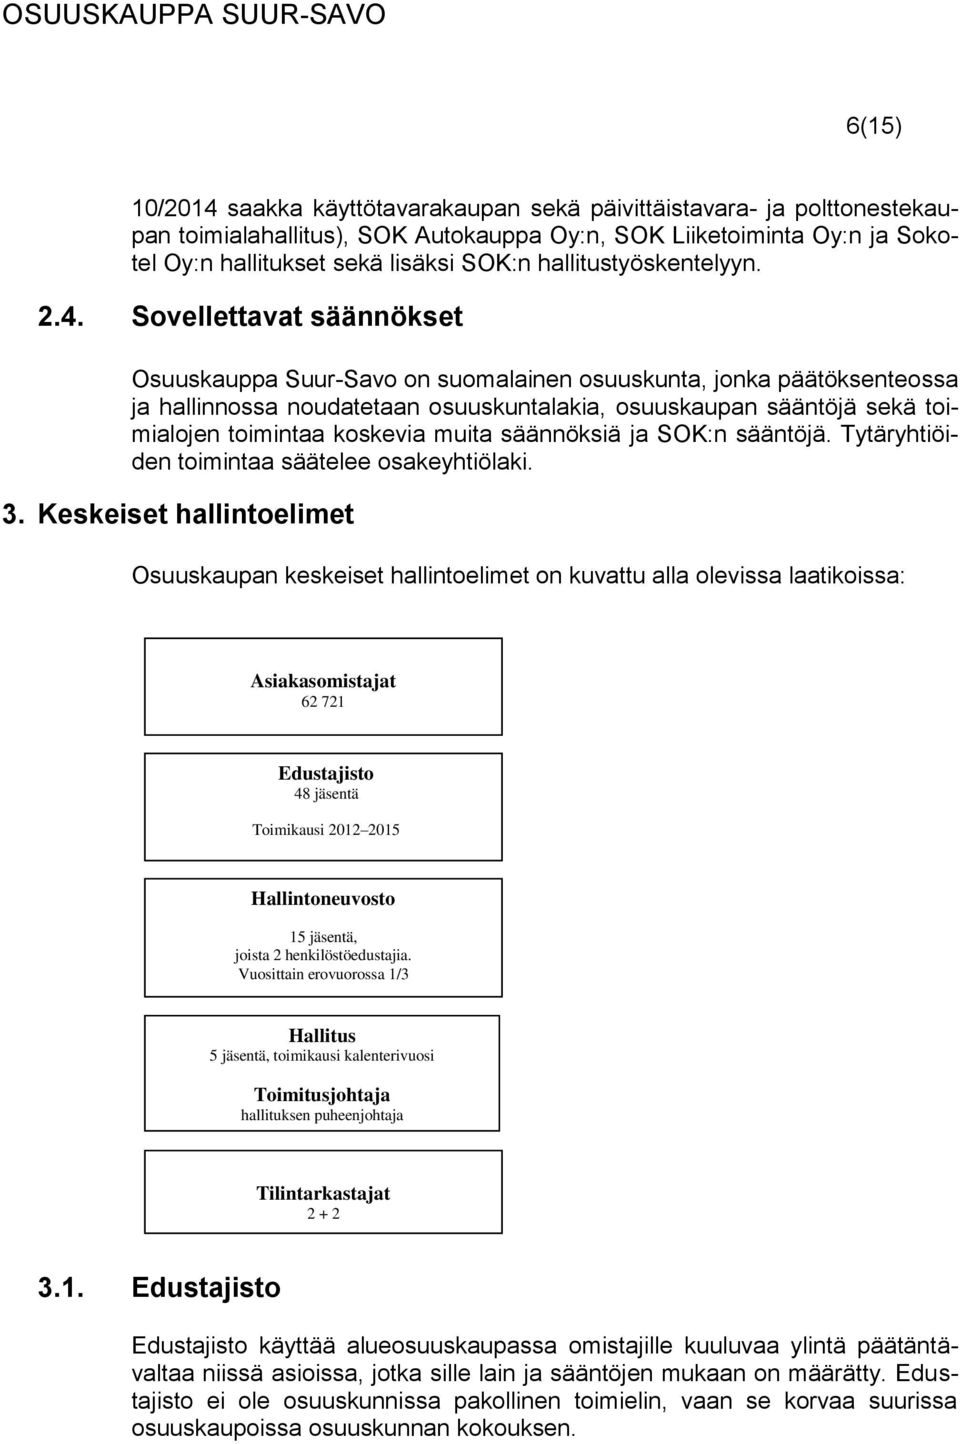 Sovellettavat säännökset Osuuskauppa Suur-Savo on suomalainen osuuskunta, jonka päätöksenteossa ja hallinnossa noudatetaan osuuskuntalakia, osuuskaupan sääntöjä sekä toimialojen toimintaa koskevia